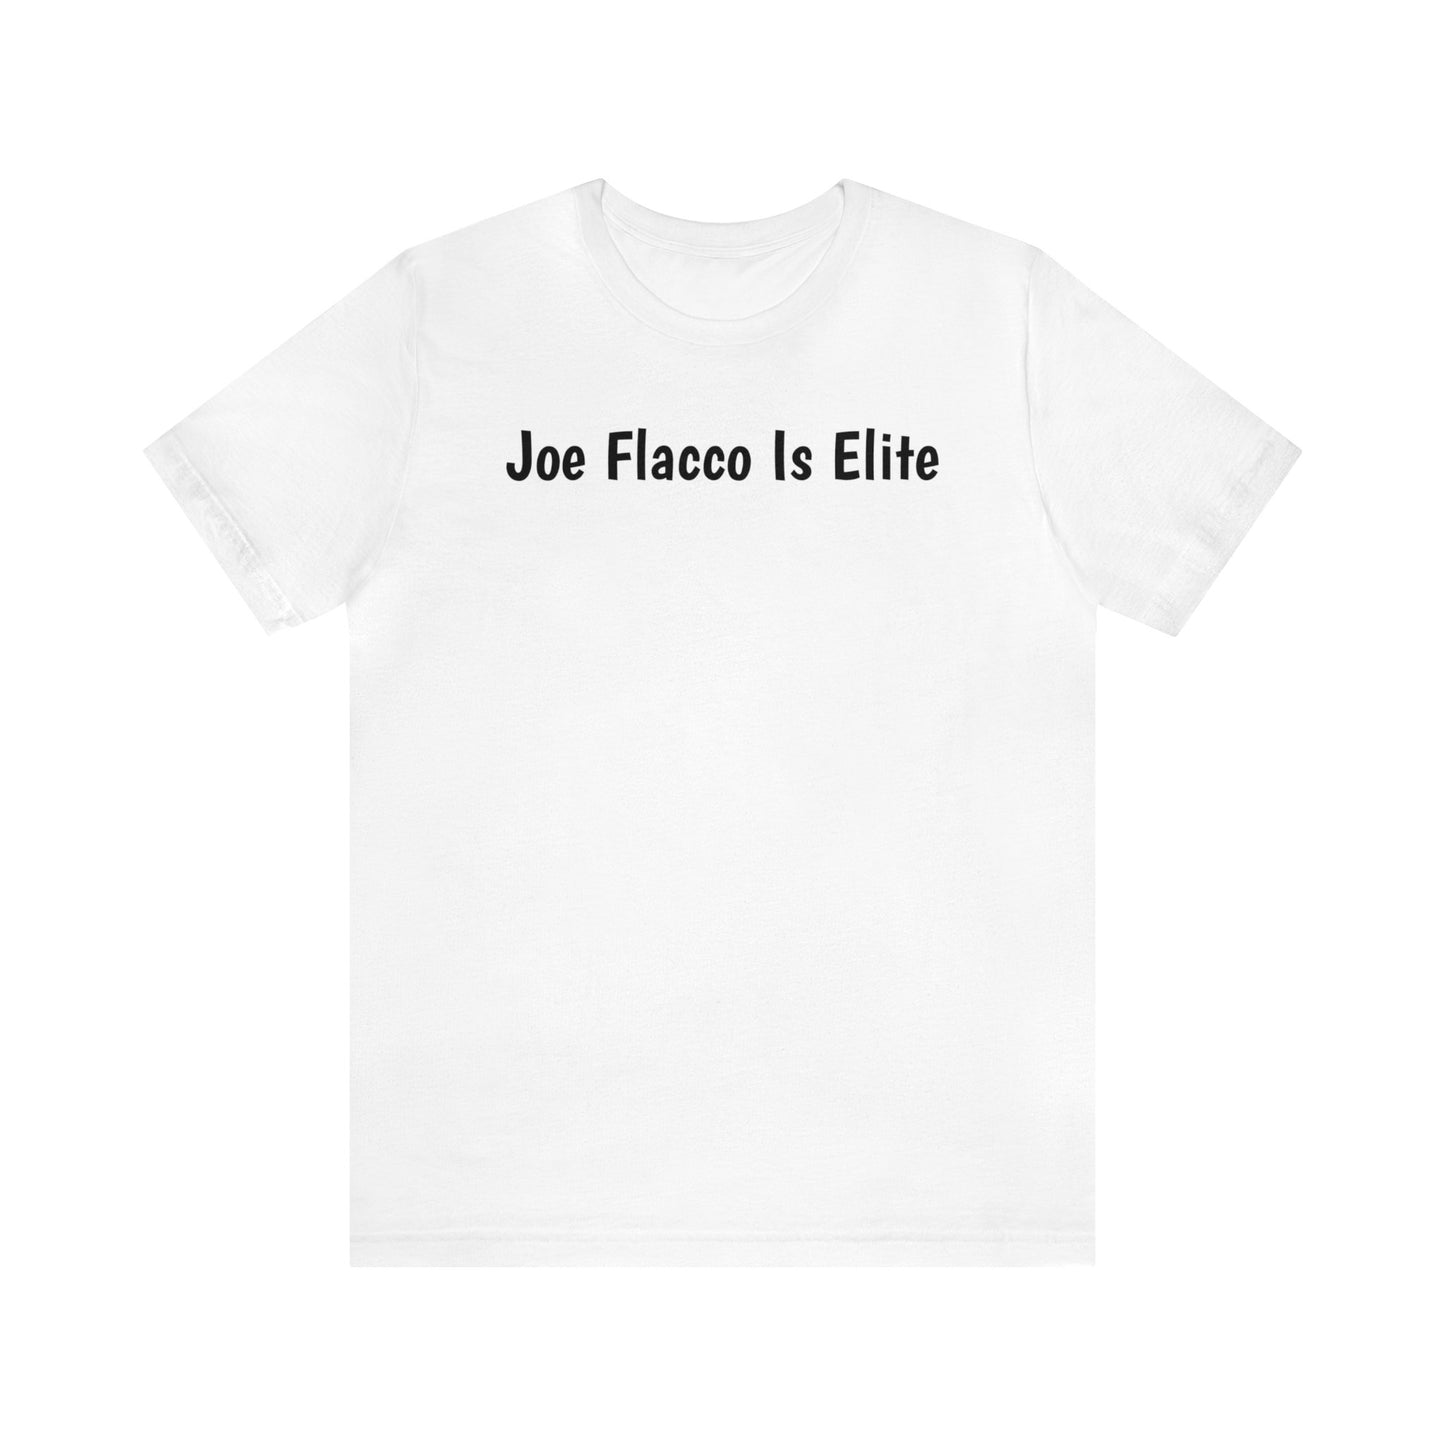 Joe Flacco Is Elite T-Shirt